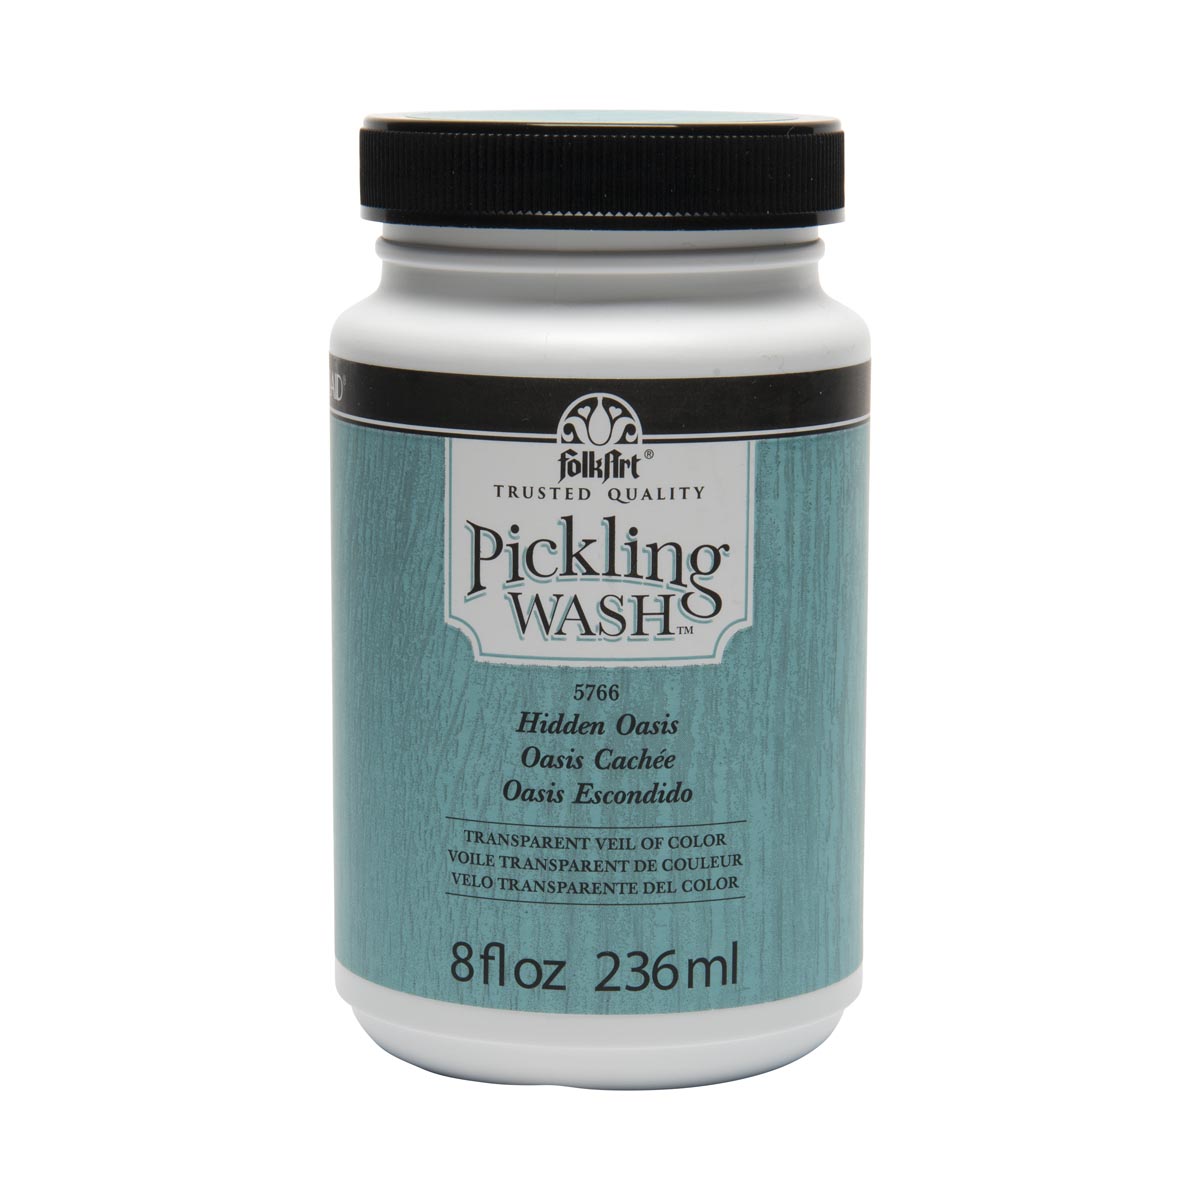 FolkArt ® Pickling Wash™ - Hidden Oasis, 8 oz. - 5766